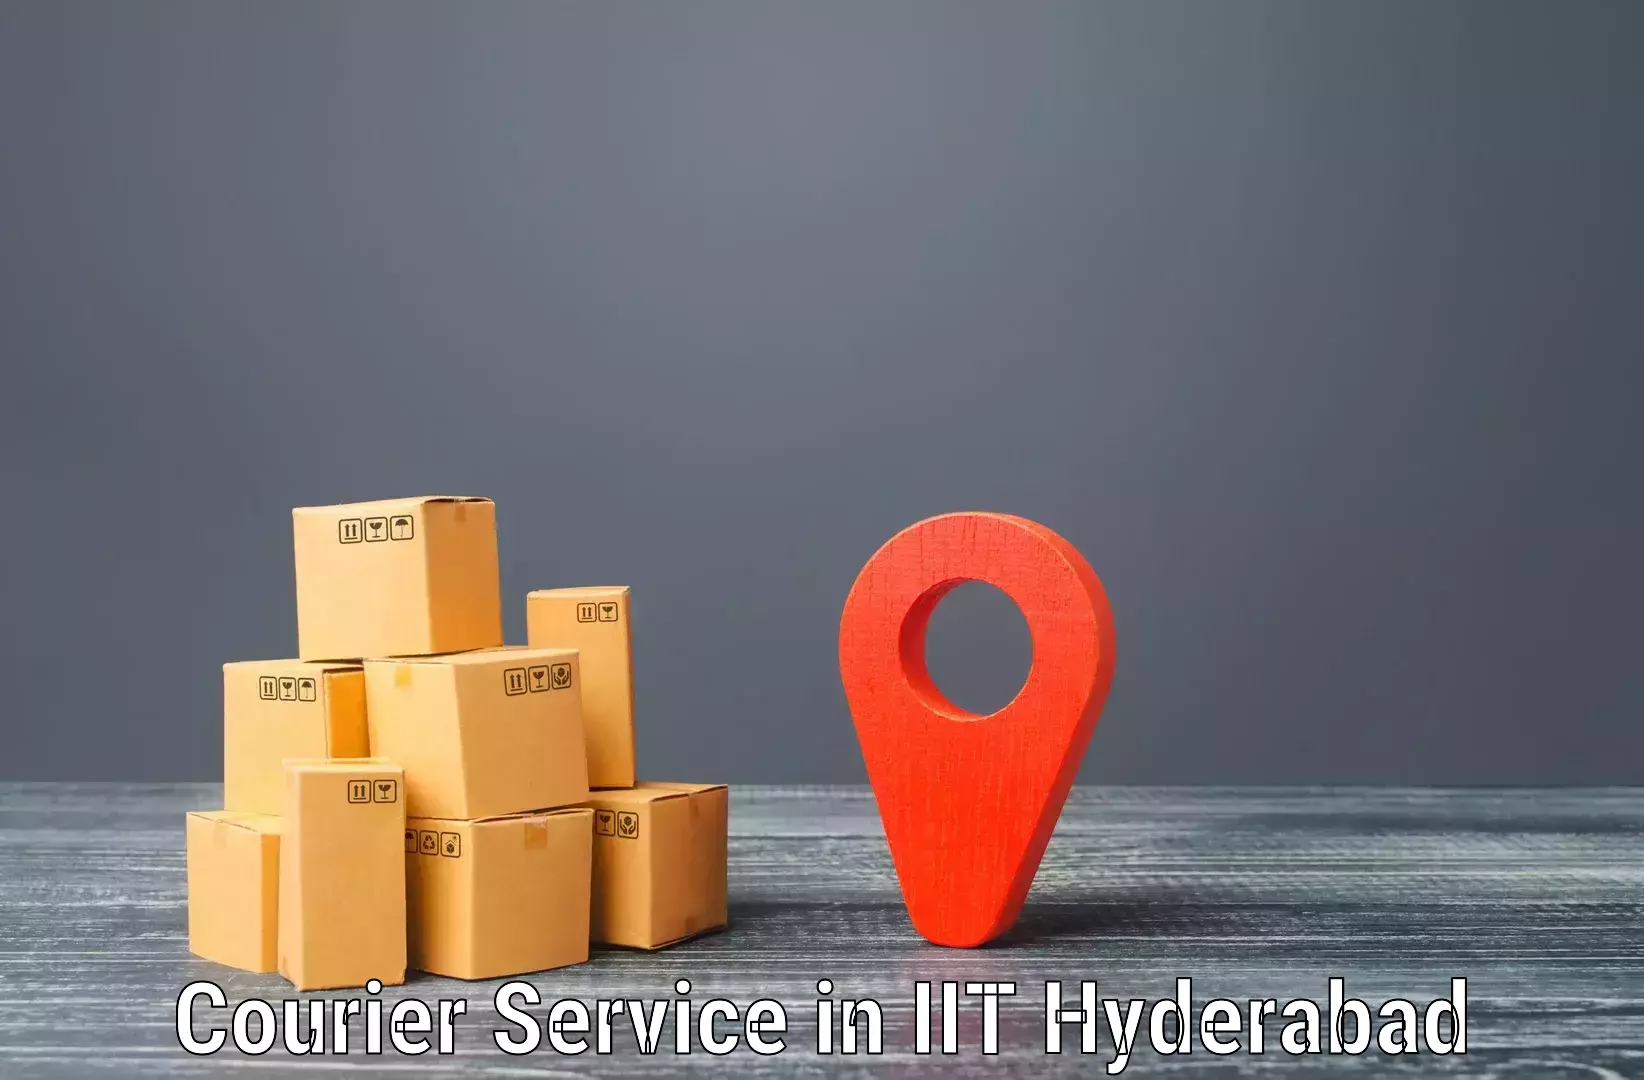 Smart logistics solutions in IIT Hyderabad